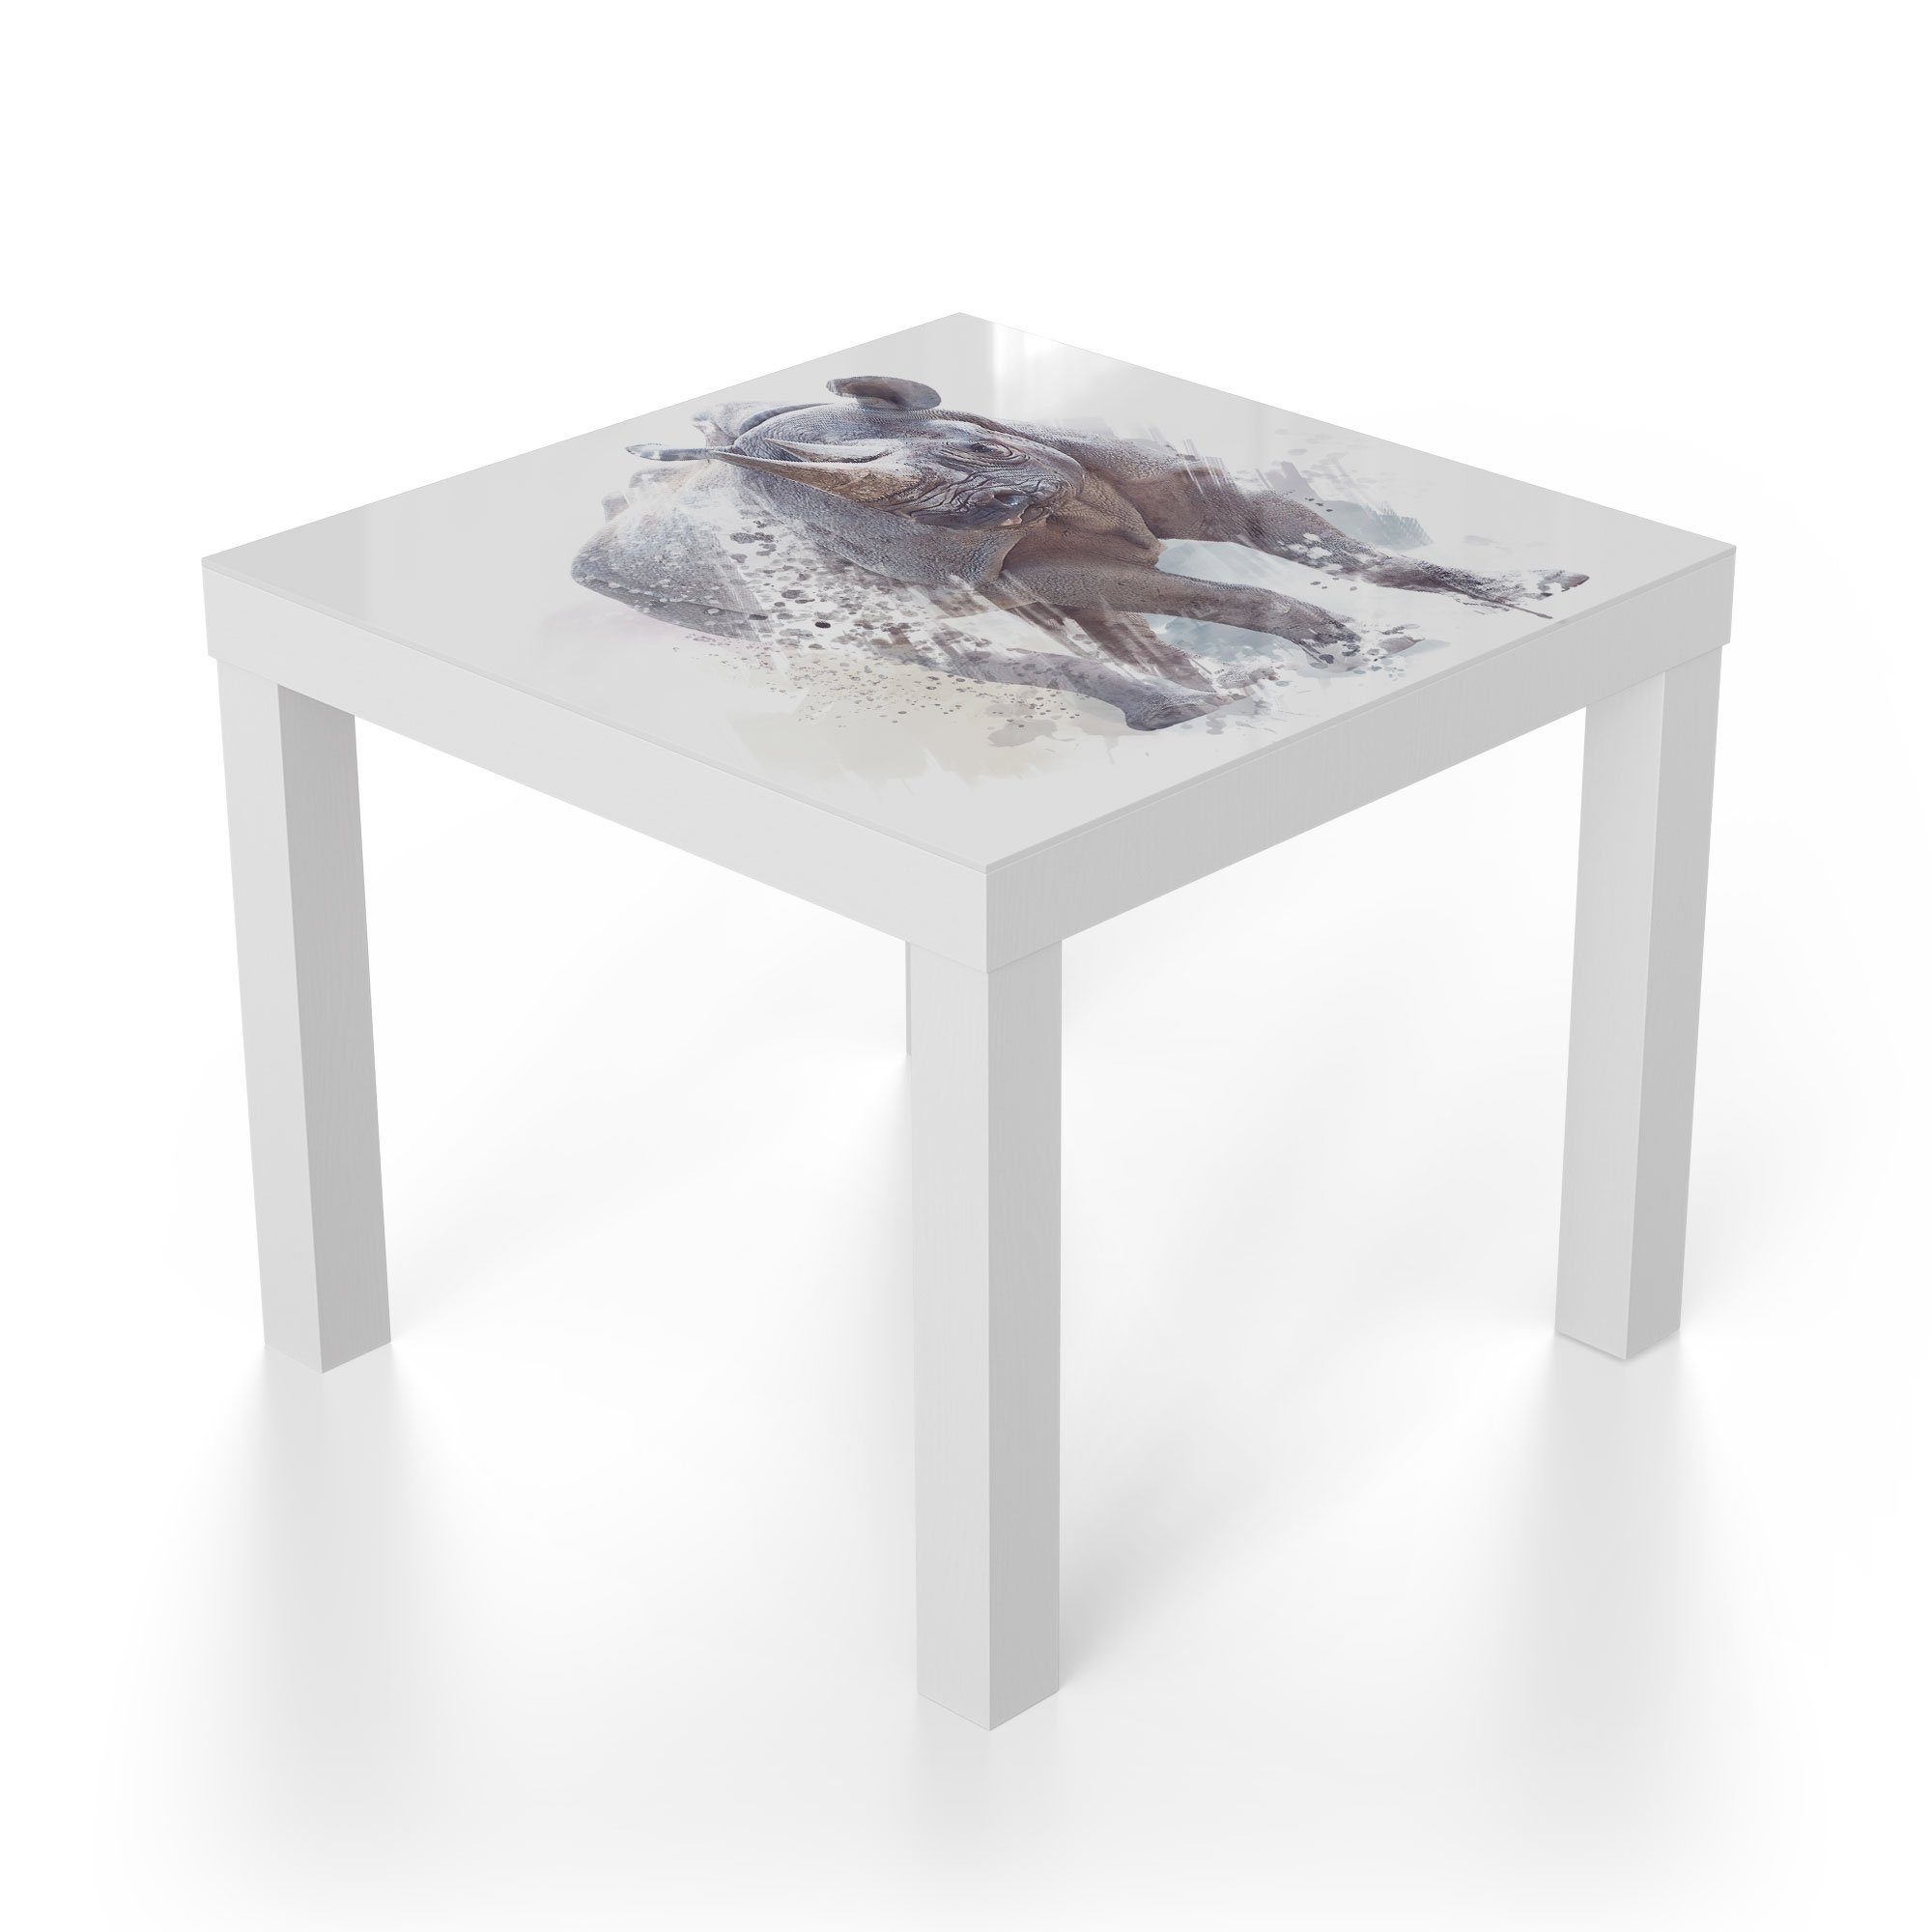 Aquarell', DEQORI Weiß modern Couchtisch Glas Beistelltisch in Glastisch 'Nashorn